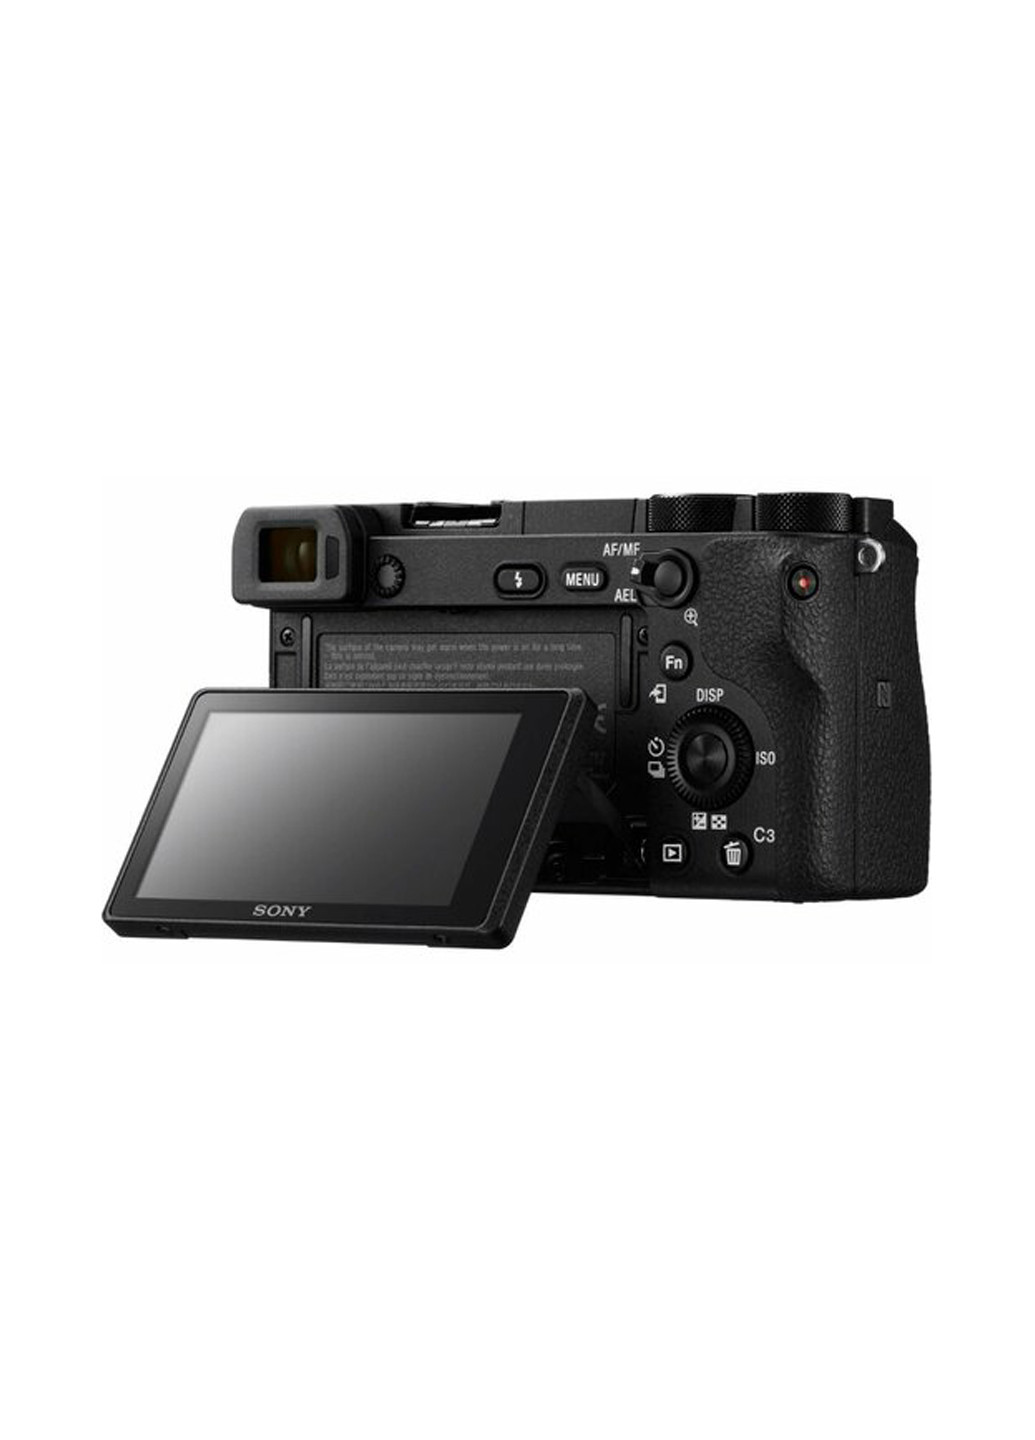 Системная фотокамера Sony Alpha 6500 body Black чёрная